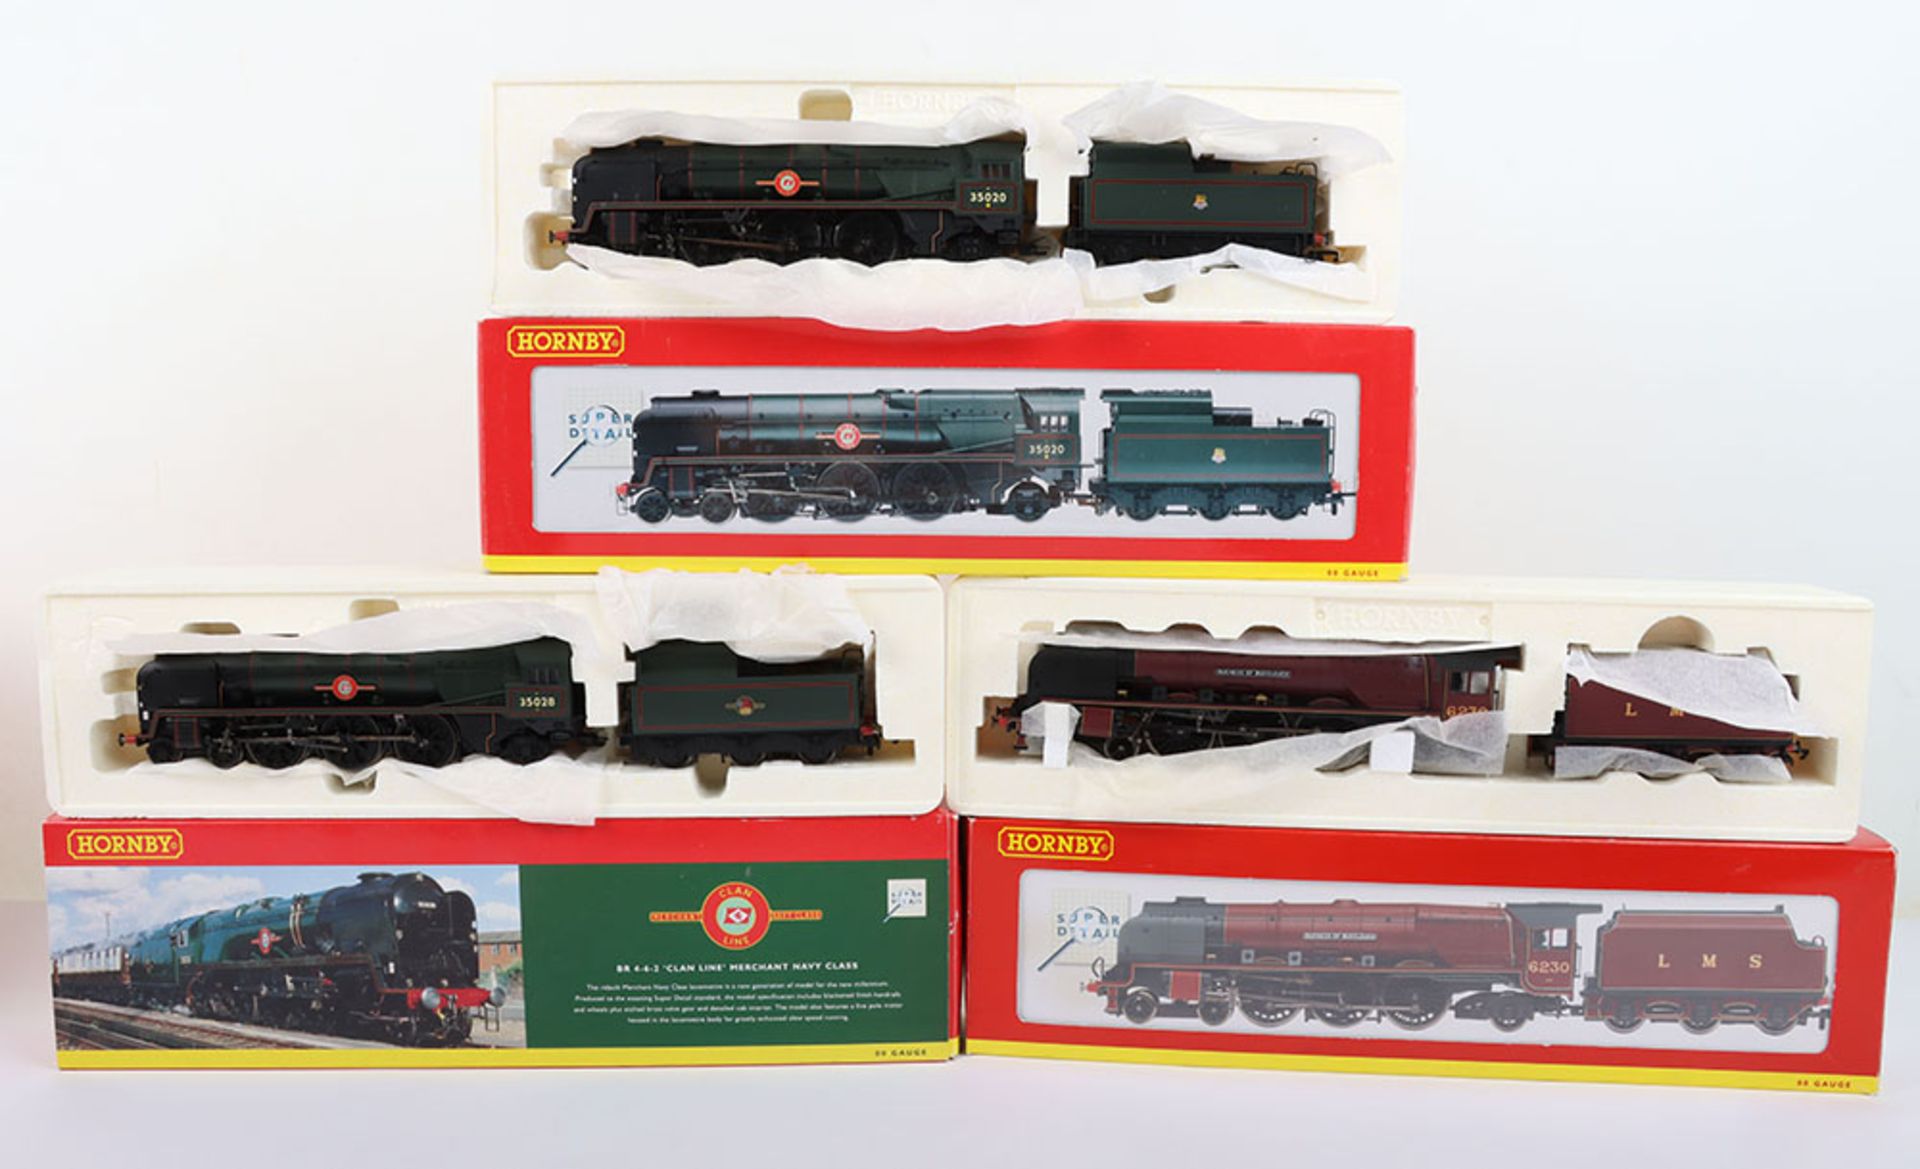 Three Hornby Railway Super Detail locomotives